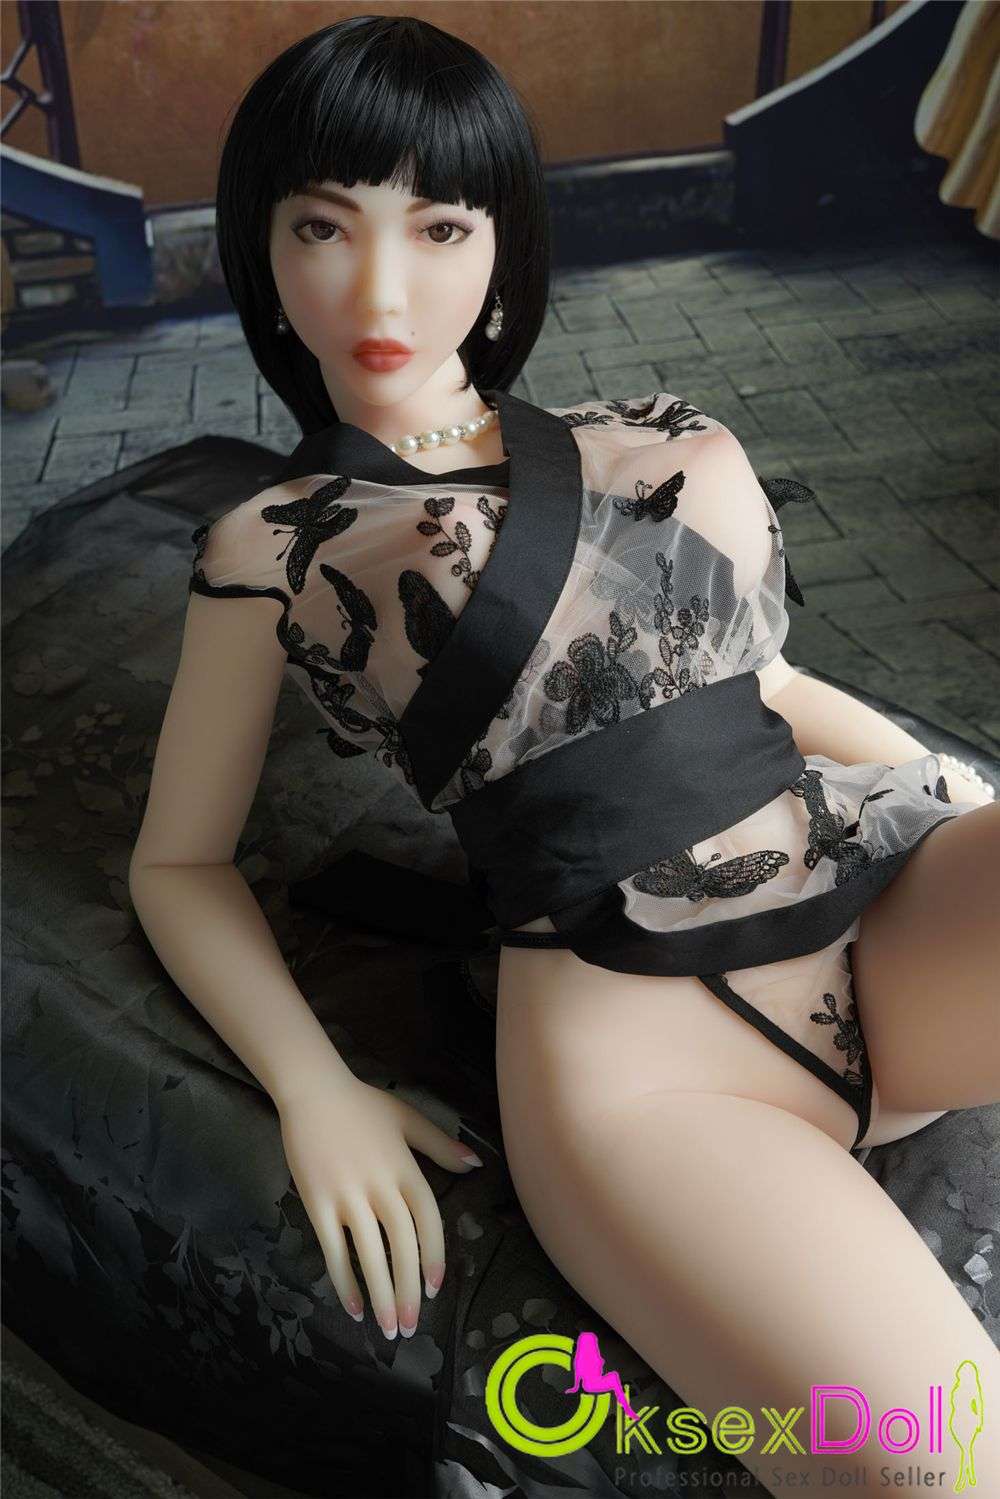 Japanese Skinny Sex Dolls